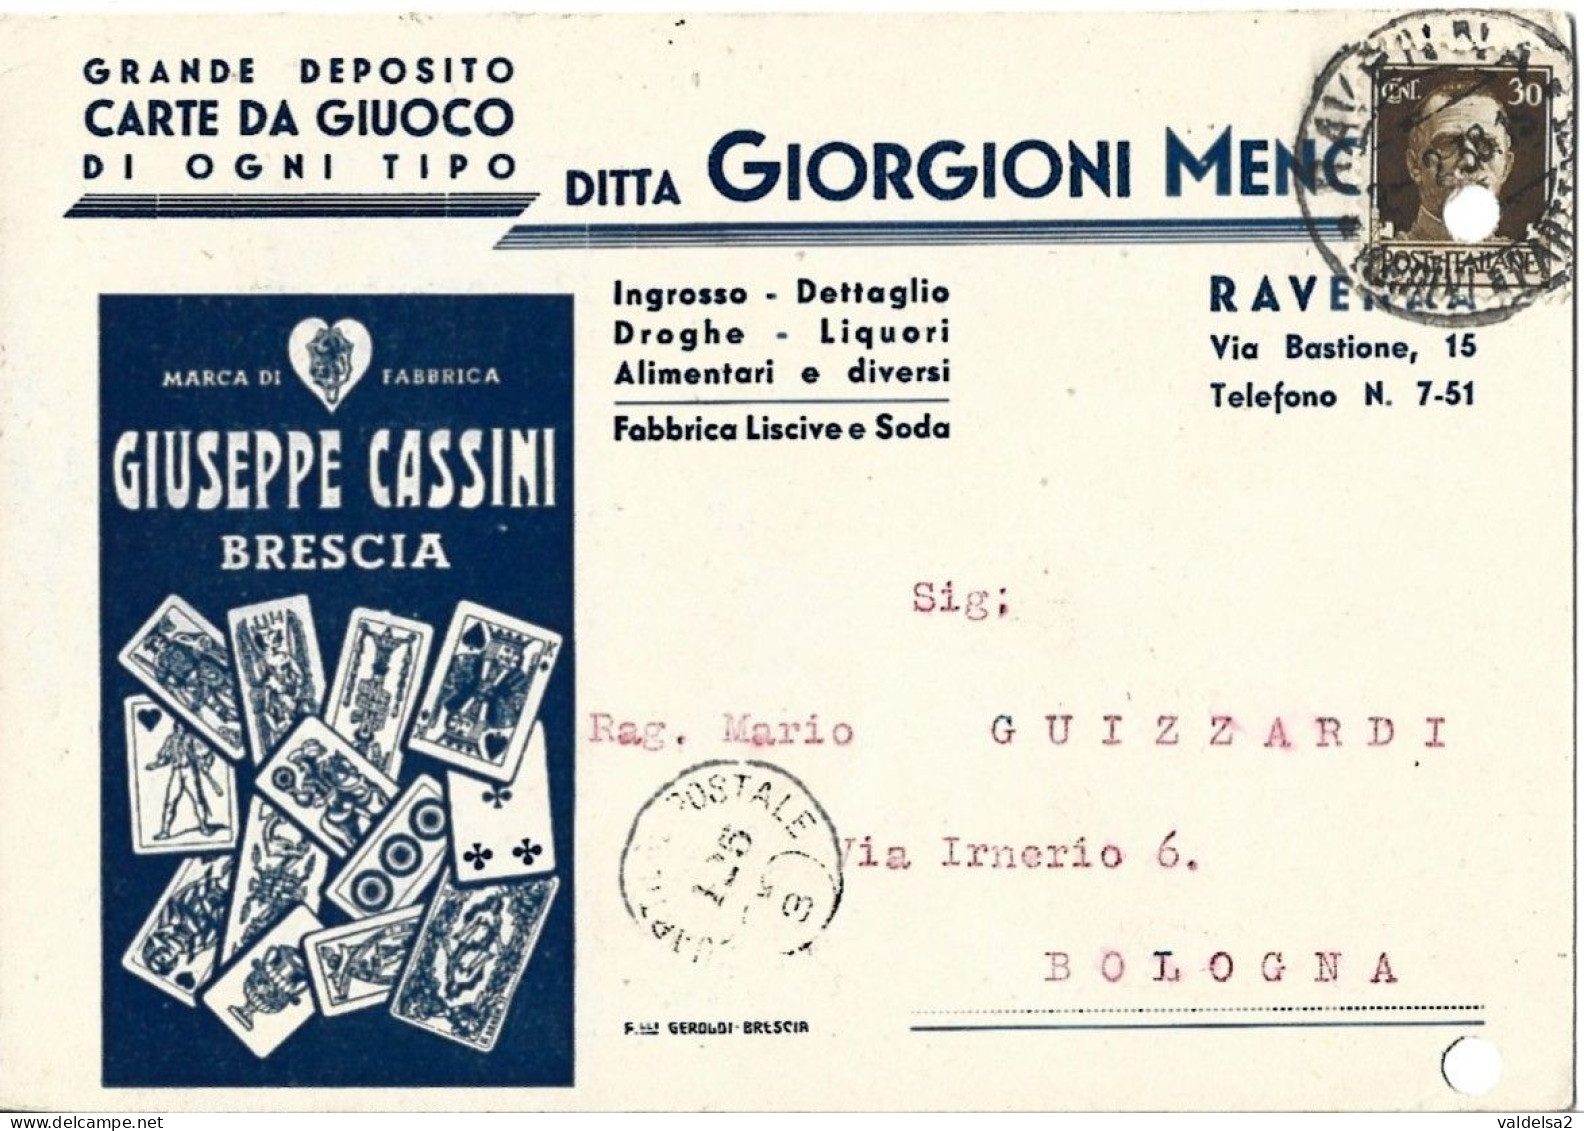 RAVENNA - CARTOLINA COMMERCIALE "GIORGIONI MENOTTI" DEPOSITO CARTE DA GIOCO GIUSEPPE CASSINI BRESCIA - 1938 - Ravenna